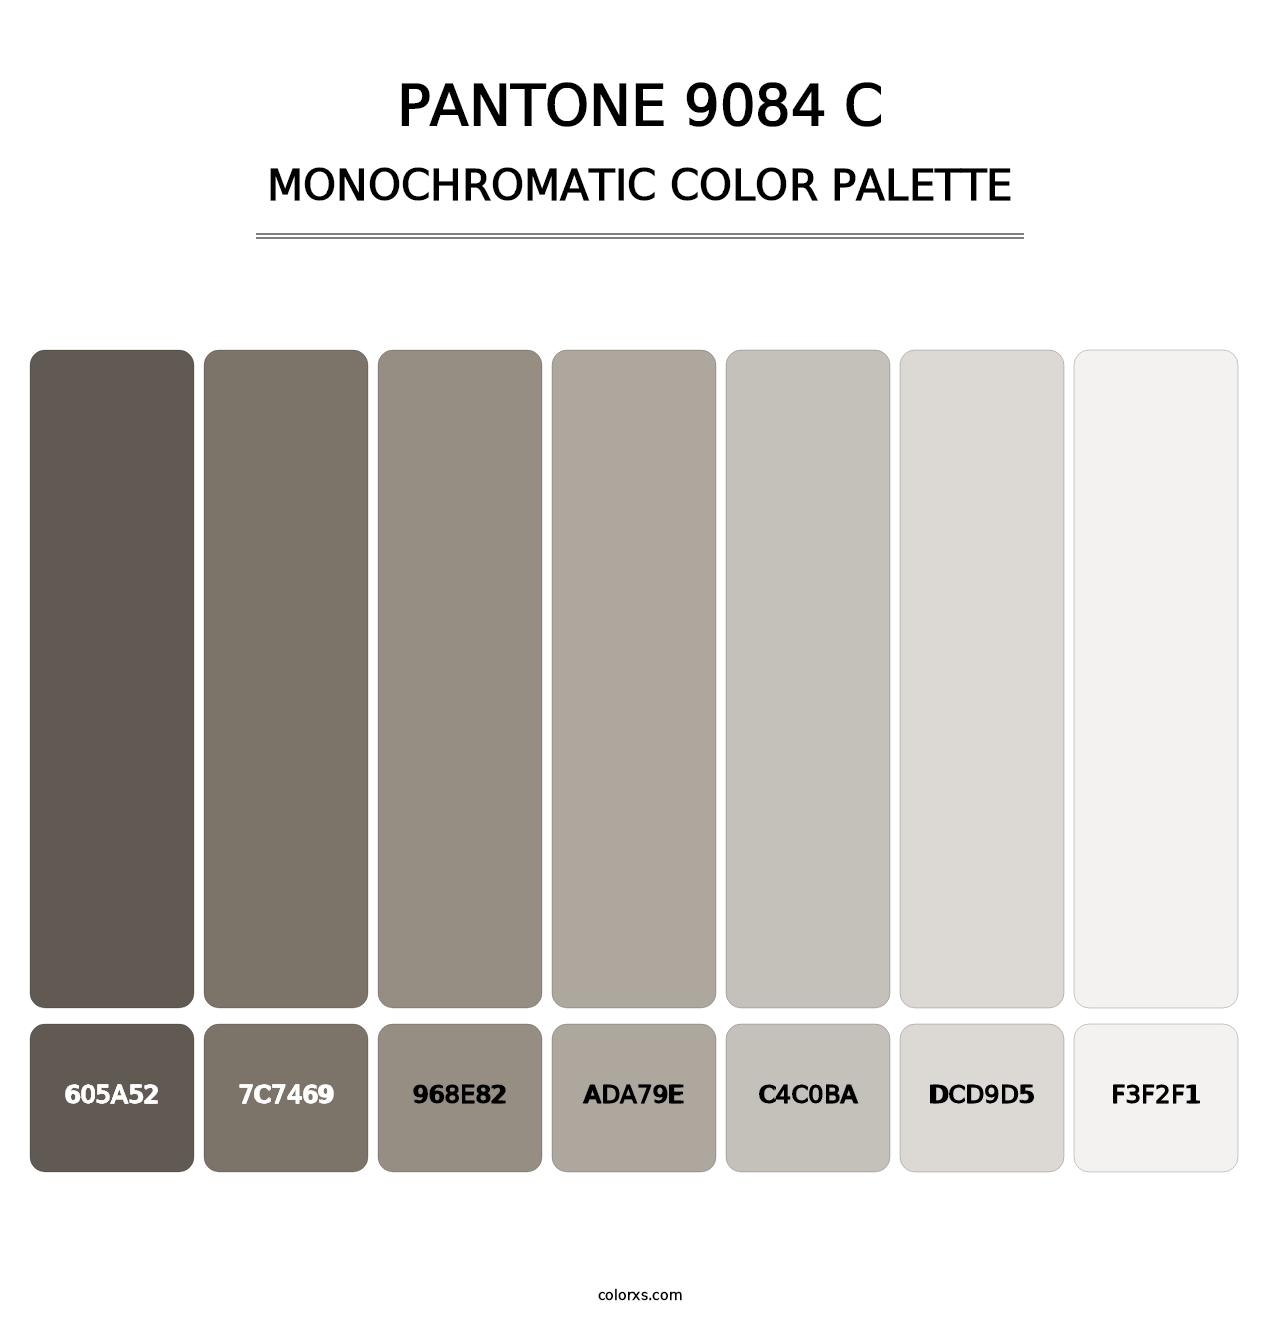 PANTONE 9084 C - Monochromatic Color Palette